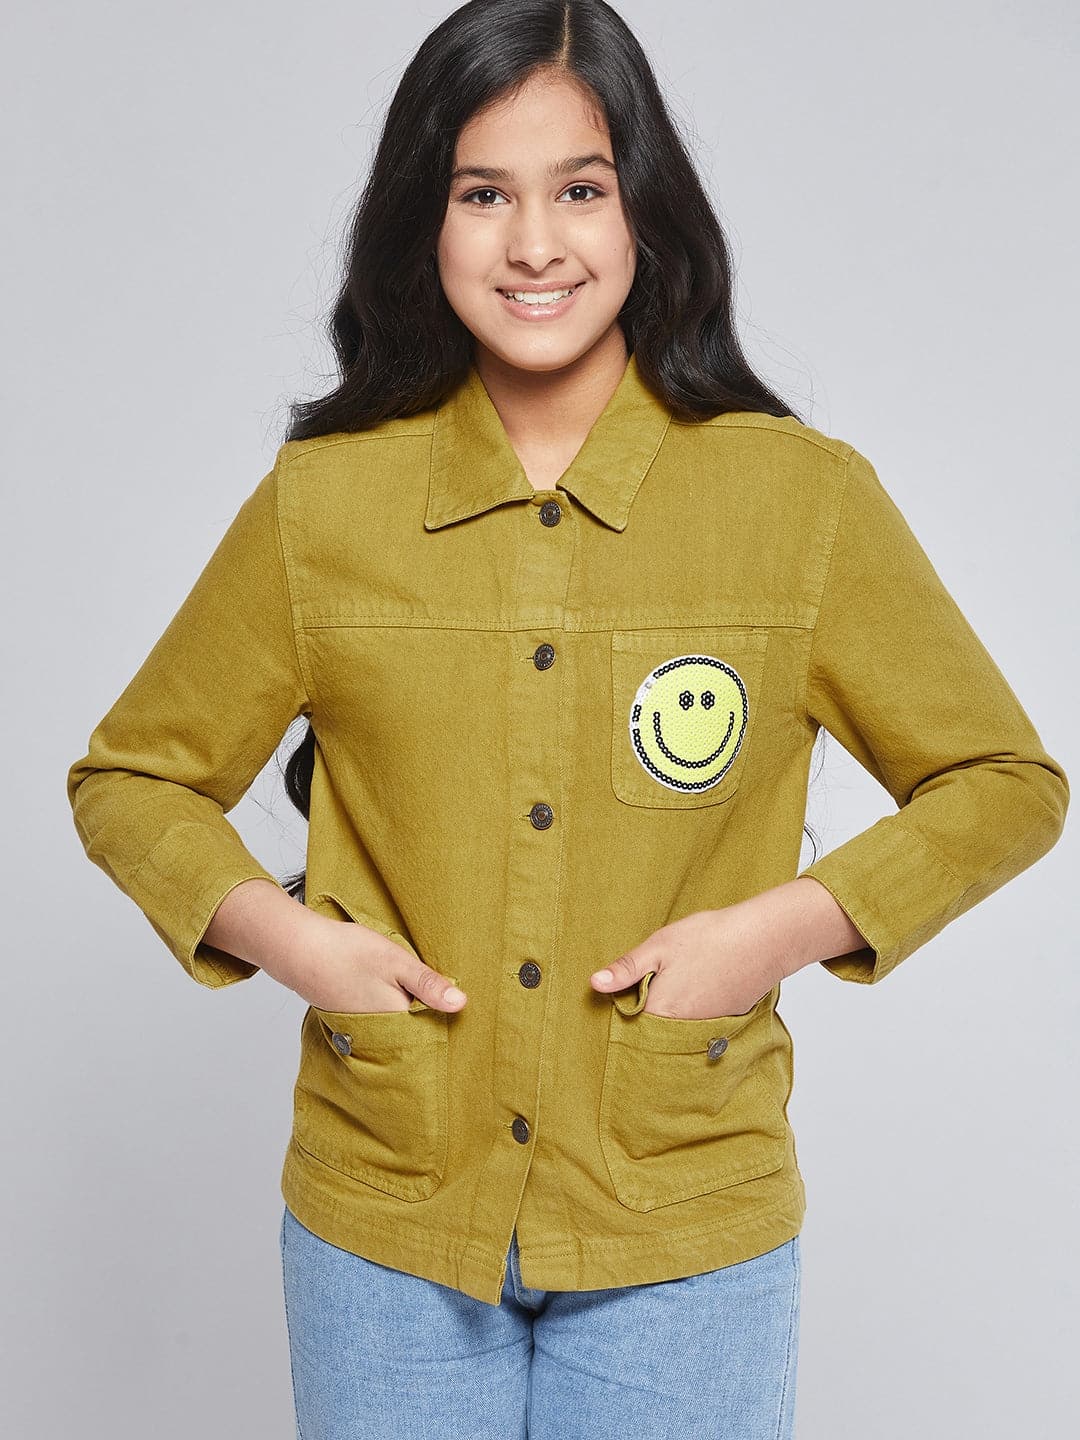 Girls Mustard SMILEY Patch Denim Jacket-Girls Jacket-SASSAFRAS